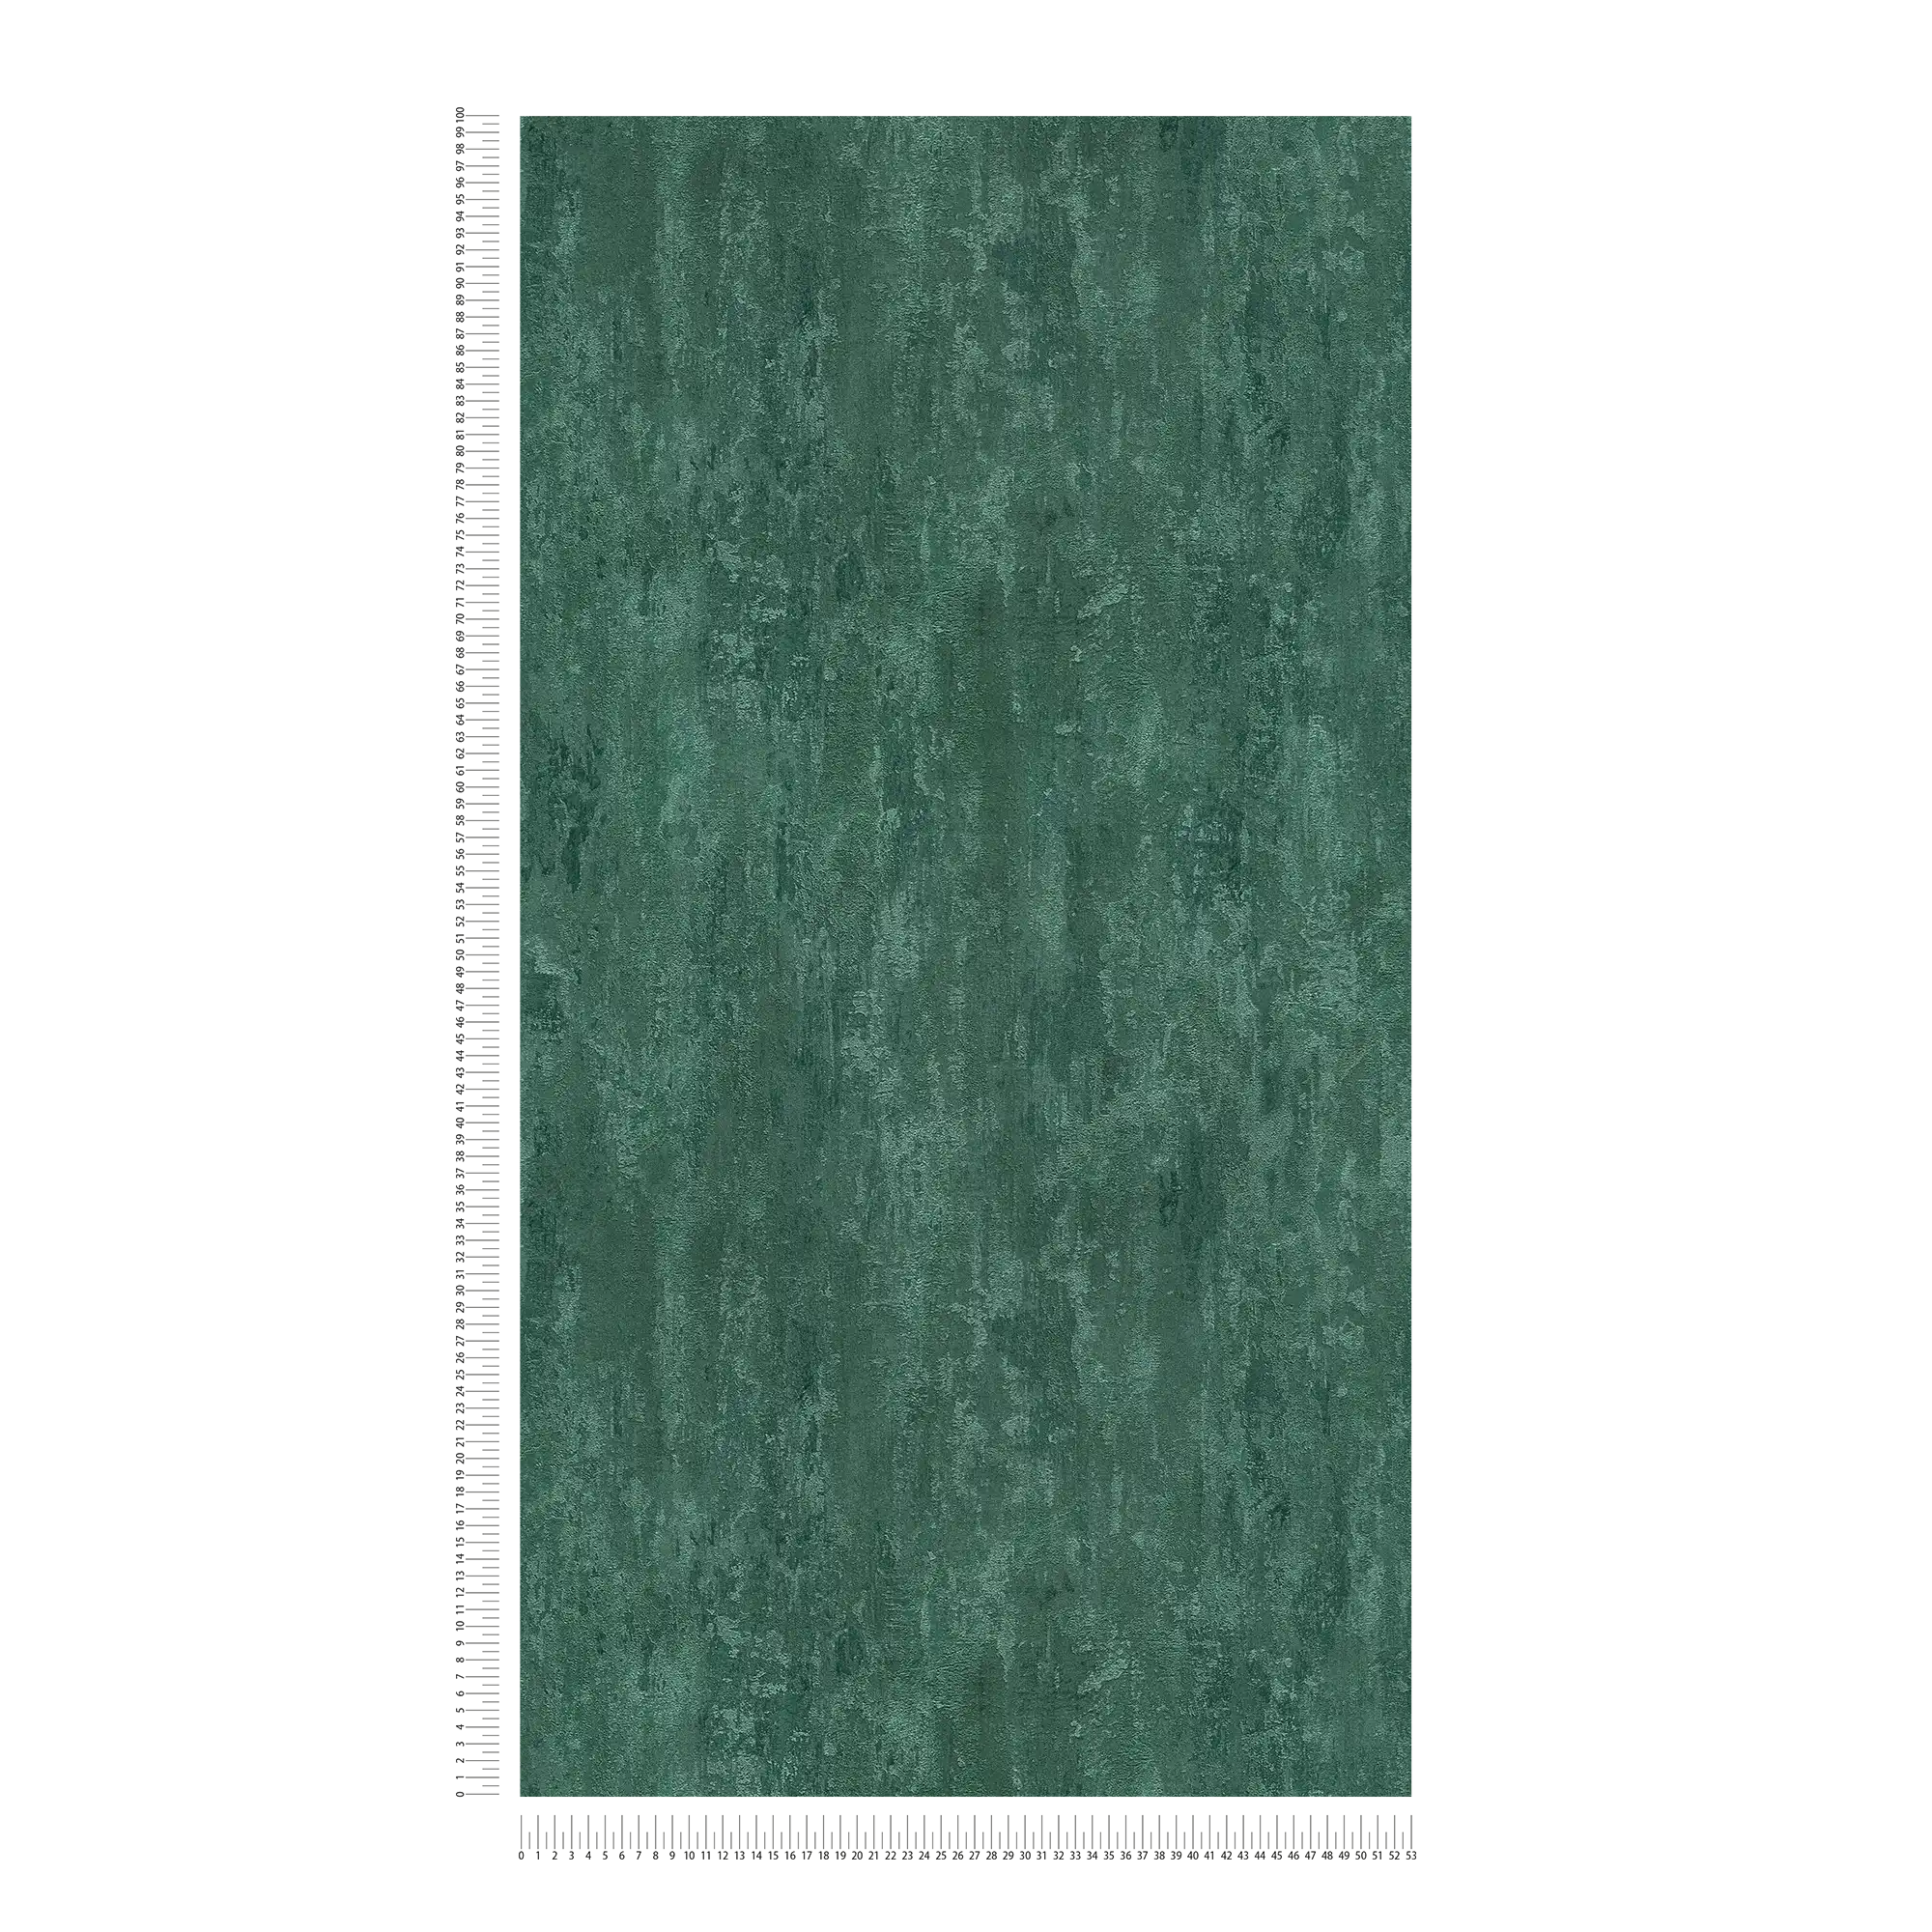             papel pintado estilo industrial con efecto de textura - verde, metálico
        